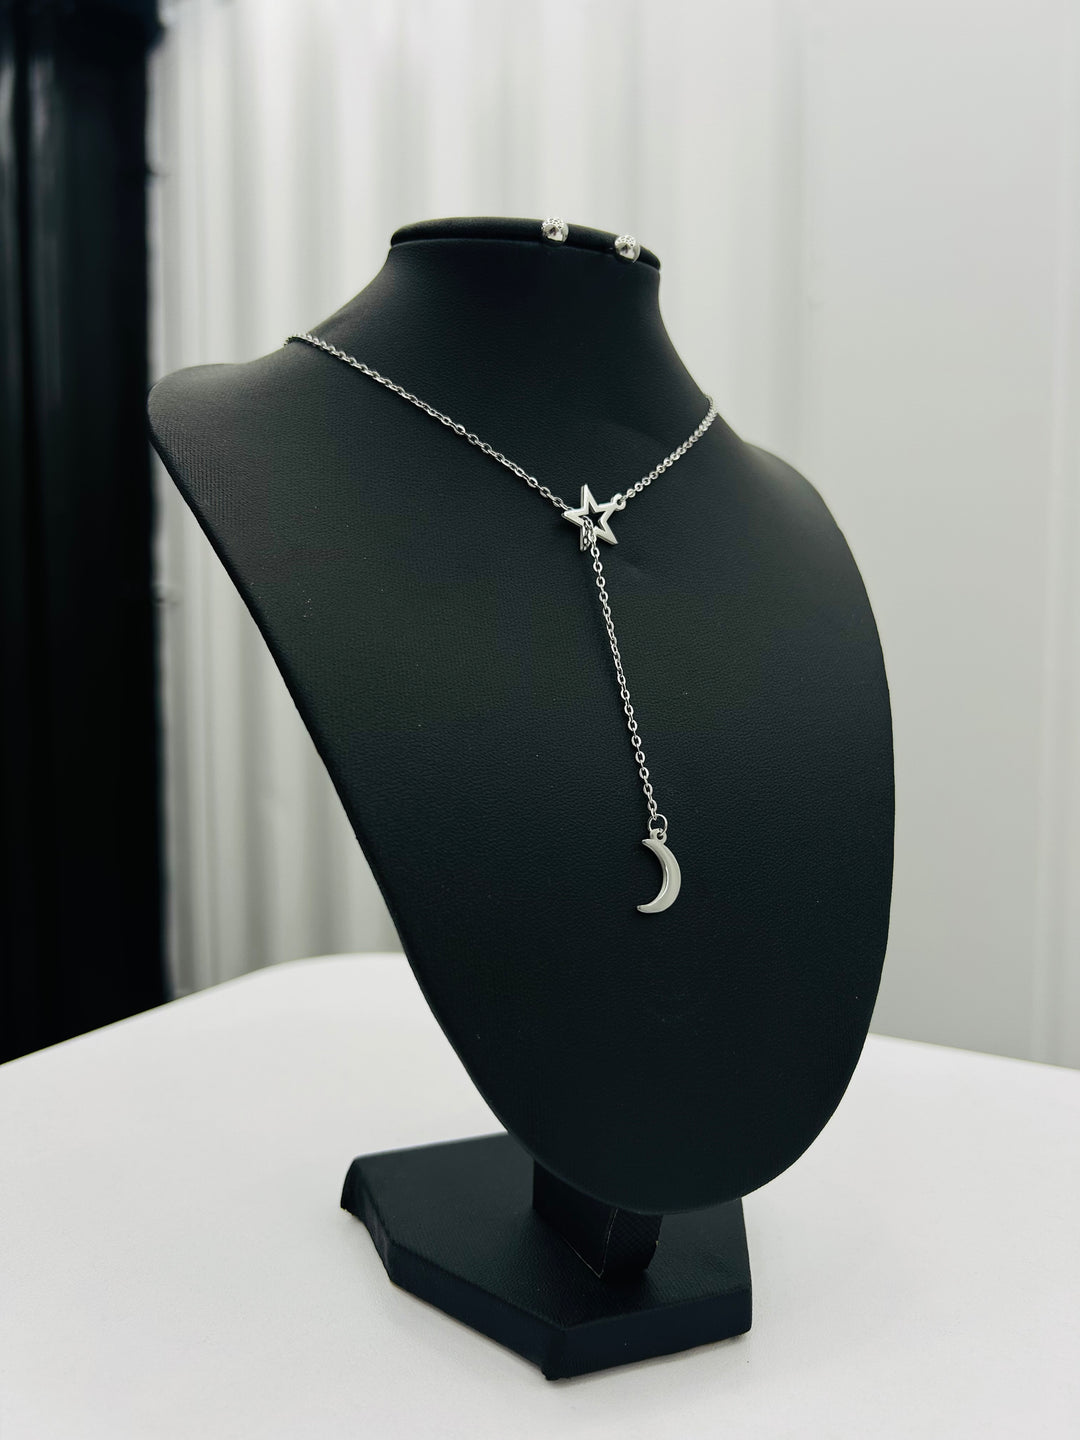 Adjustable Silver Necklace